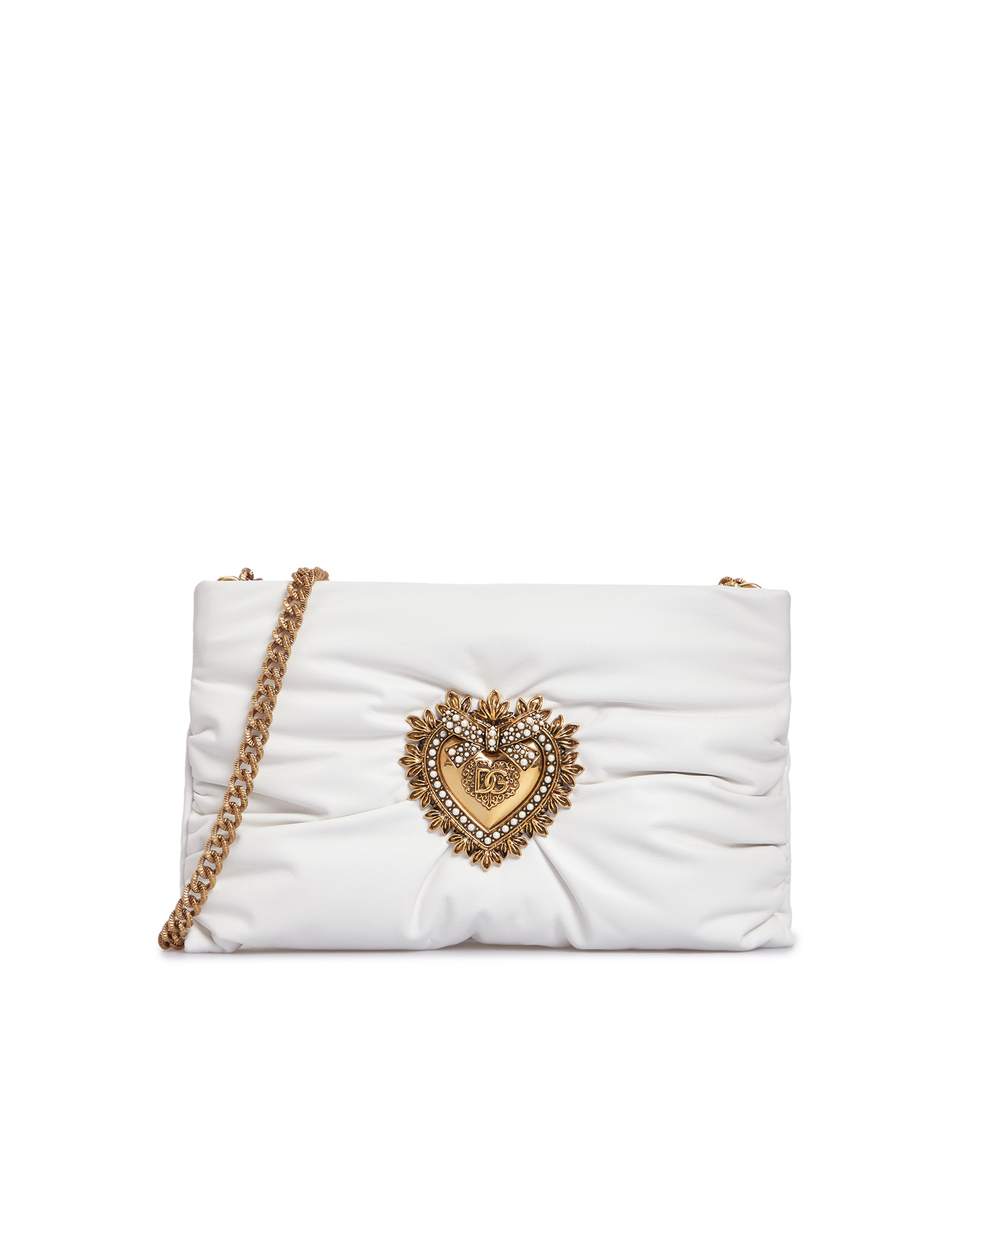 Кожаная сумка Devotion Soft Small Dolce&Gabbana BB7378-AK274, белый цвет • Купить в интернет-магазине Kameron